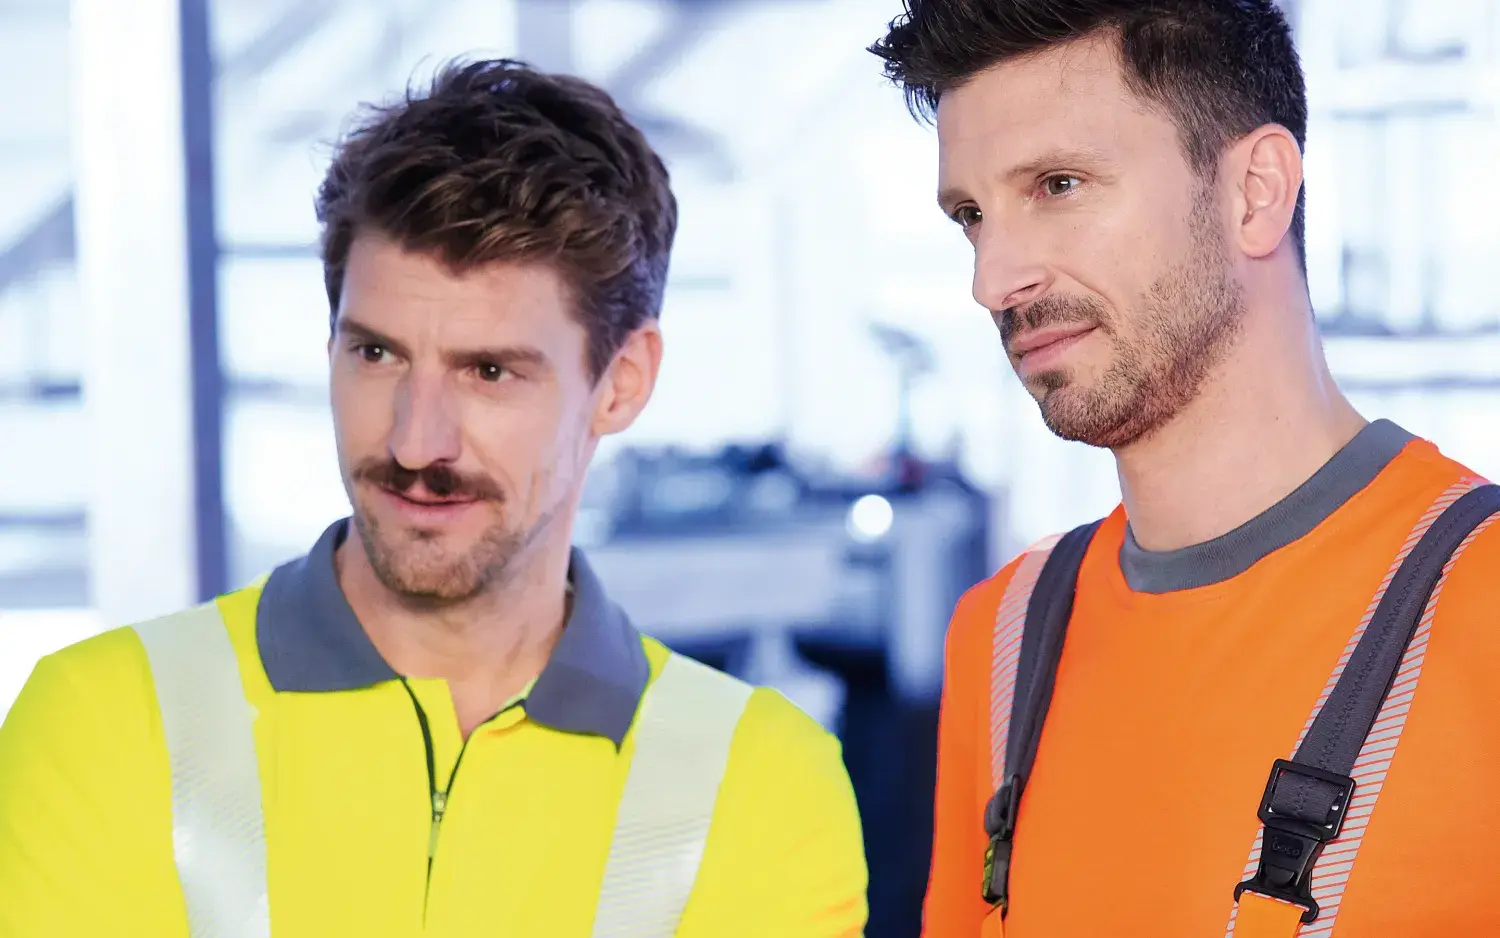 Sicherheit: Arbeiter mit gelber und orangener Warnkleidung